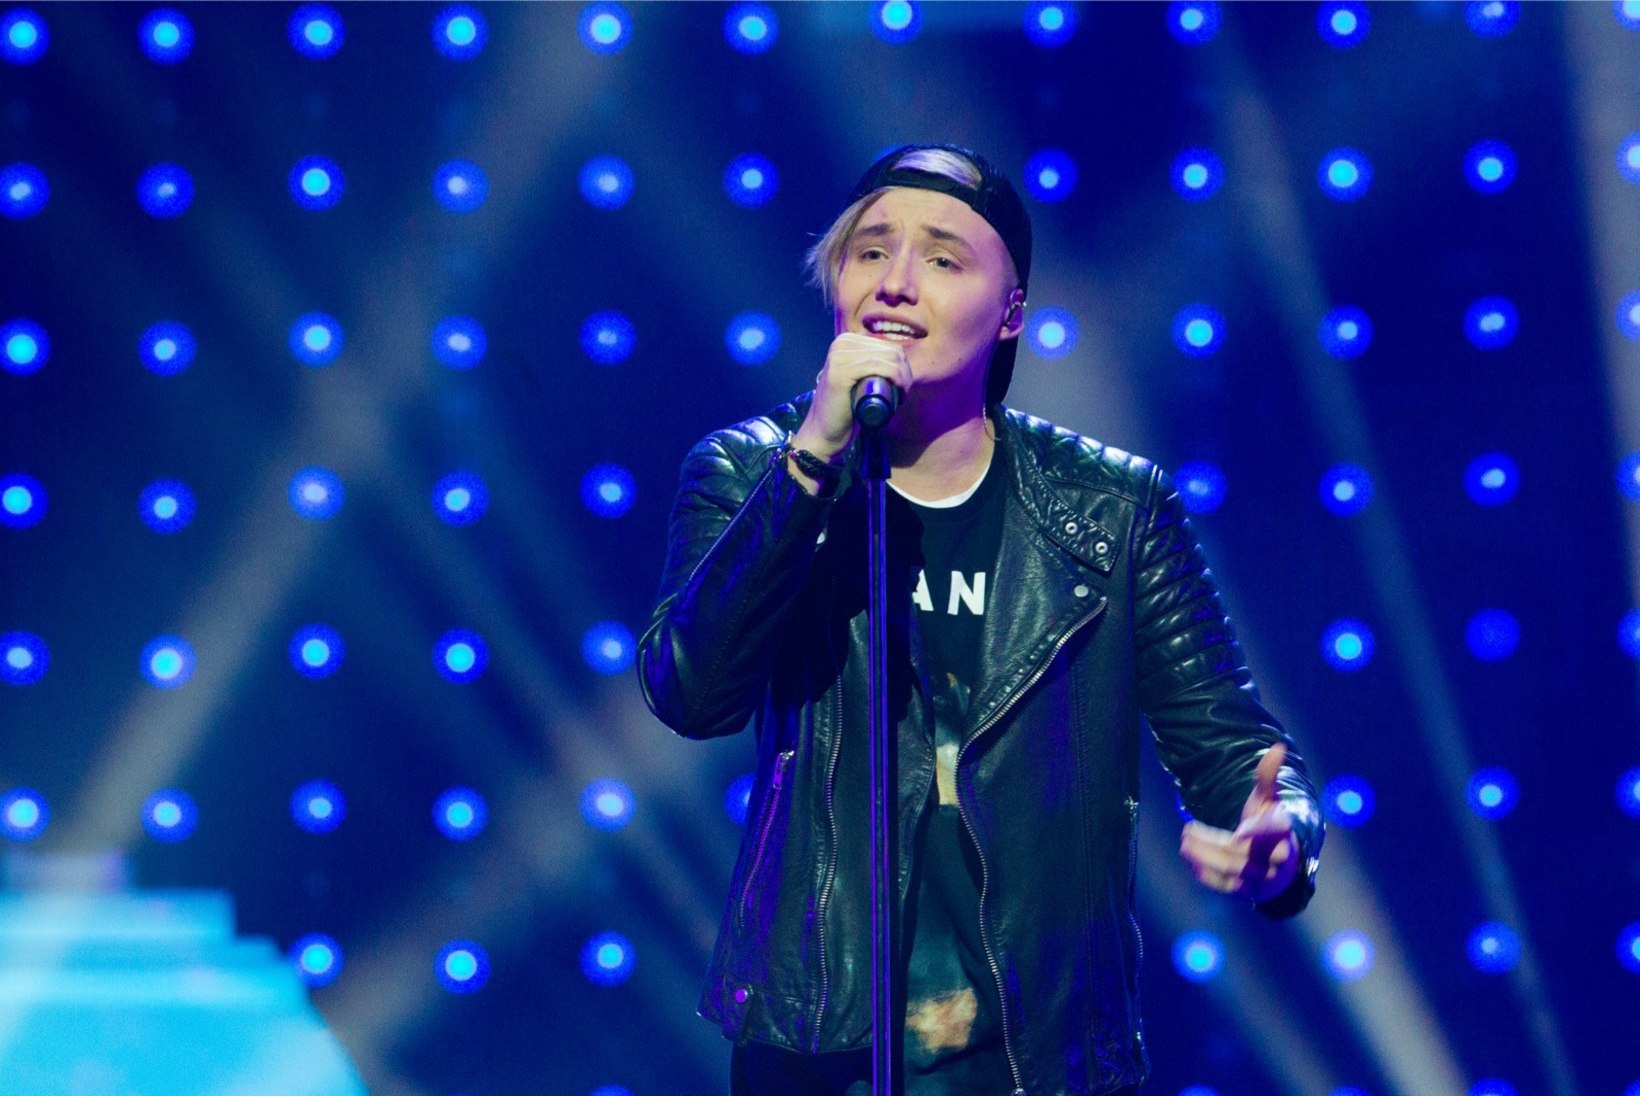 Soome popiidol Isac Elliot esineb Eesti muusikaauhindade galal